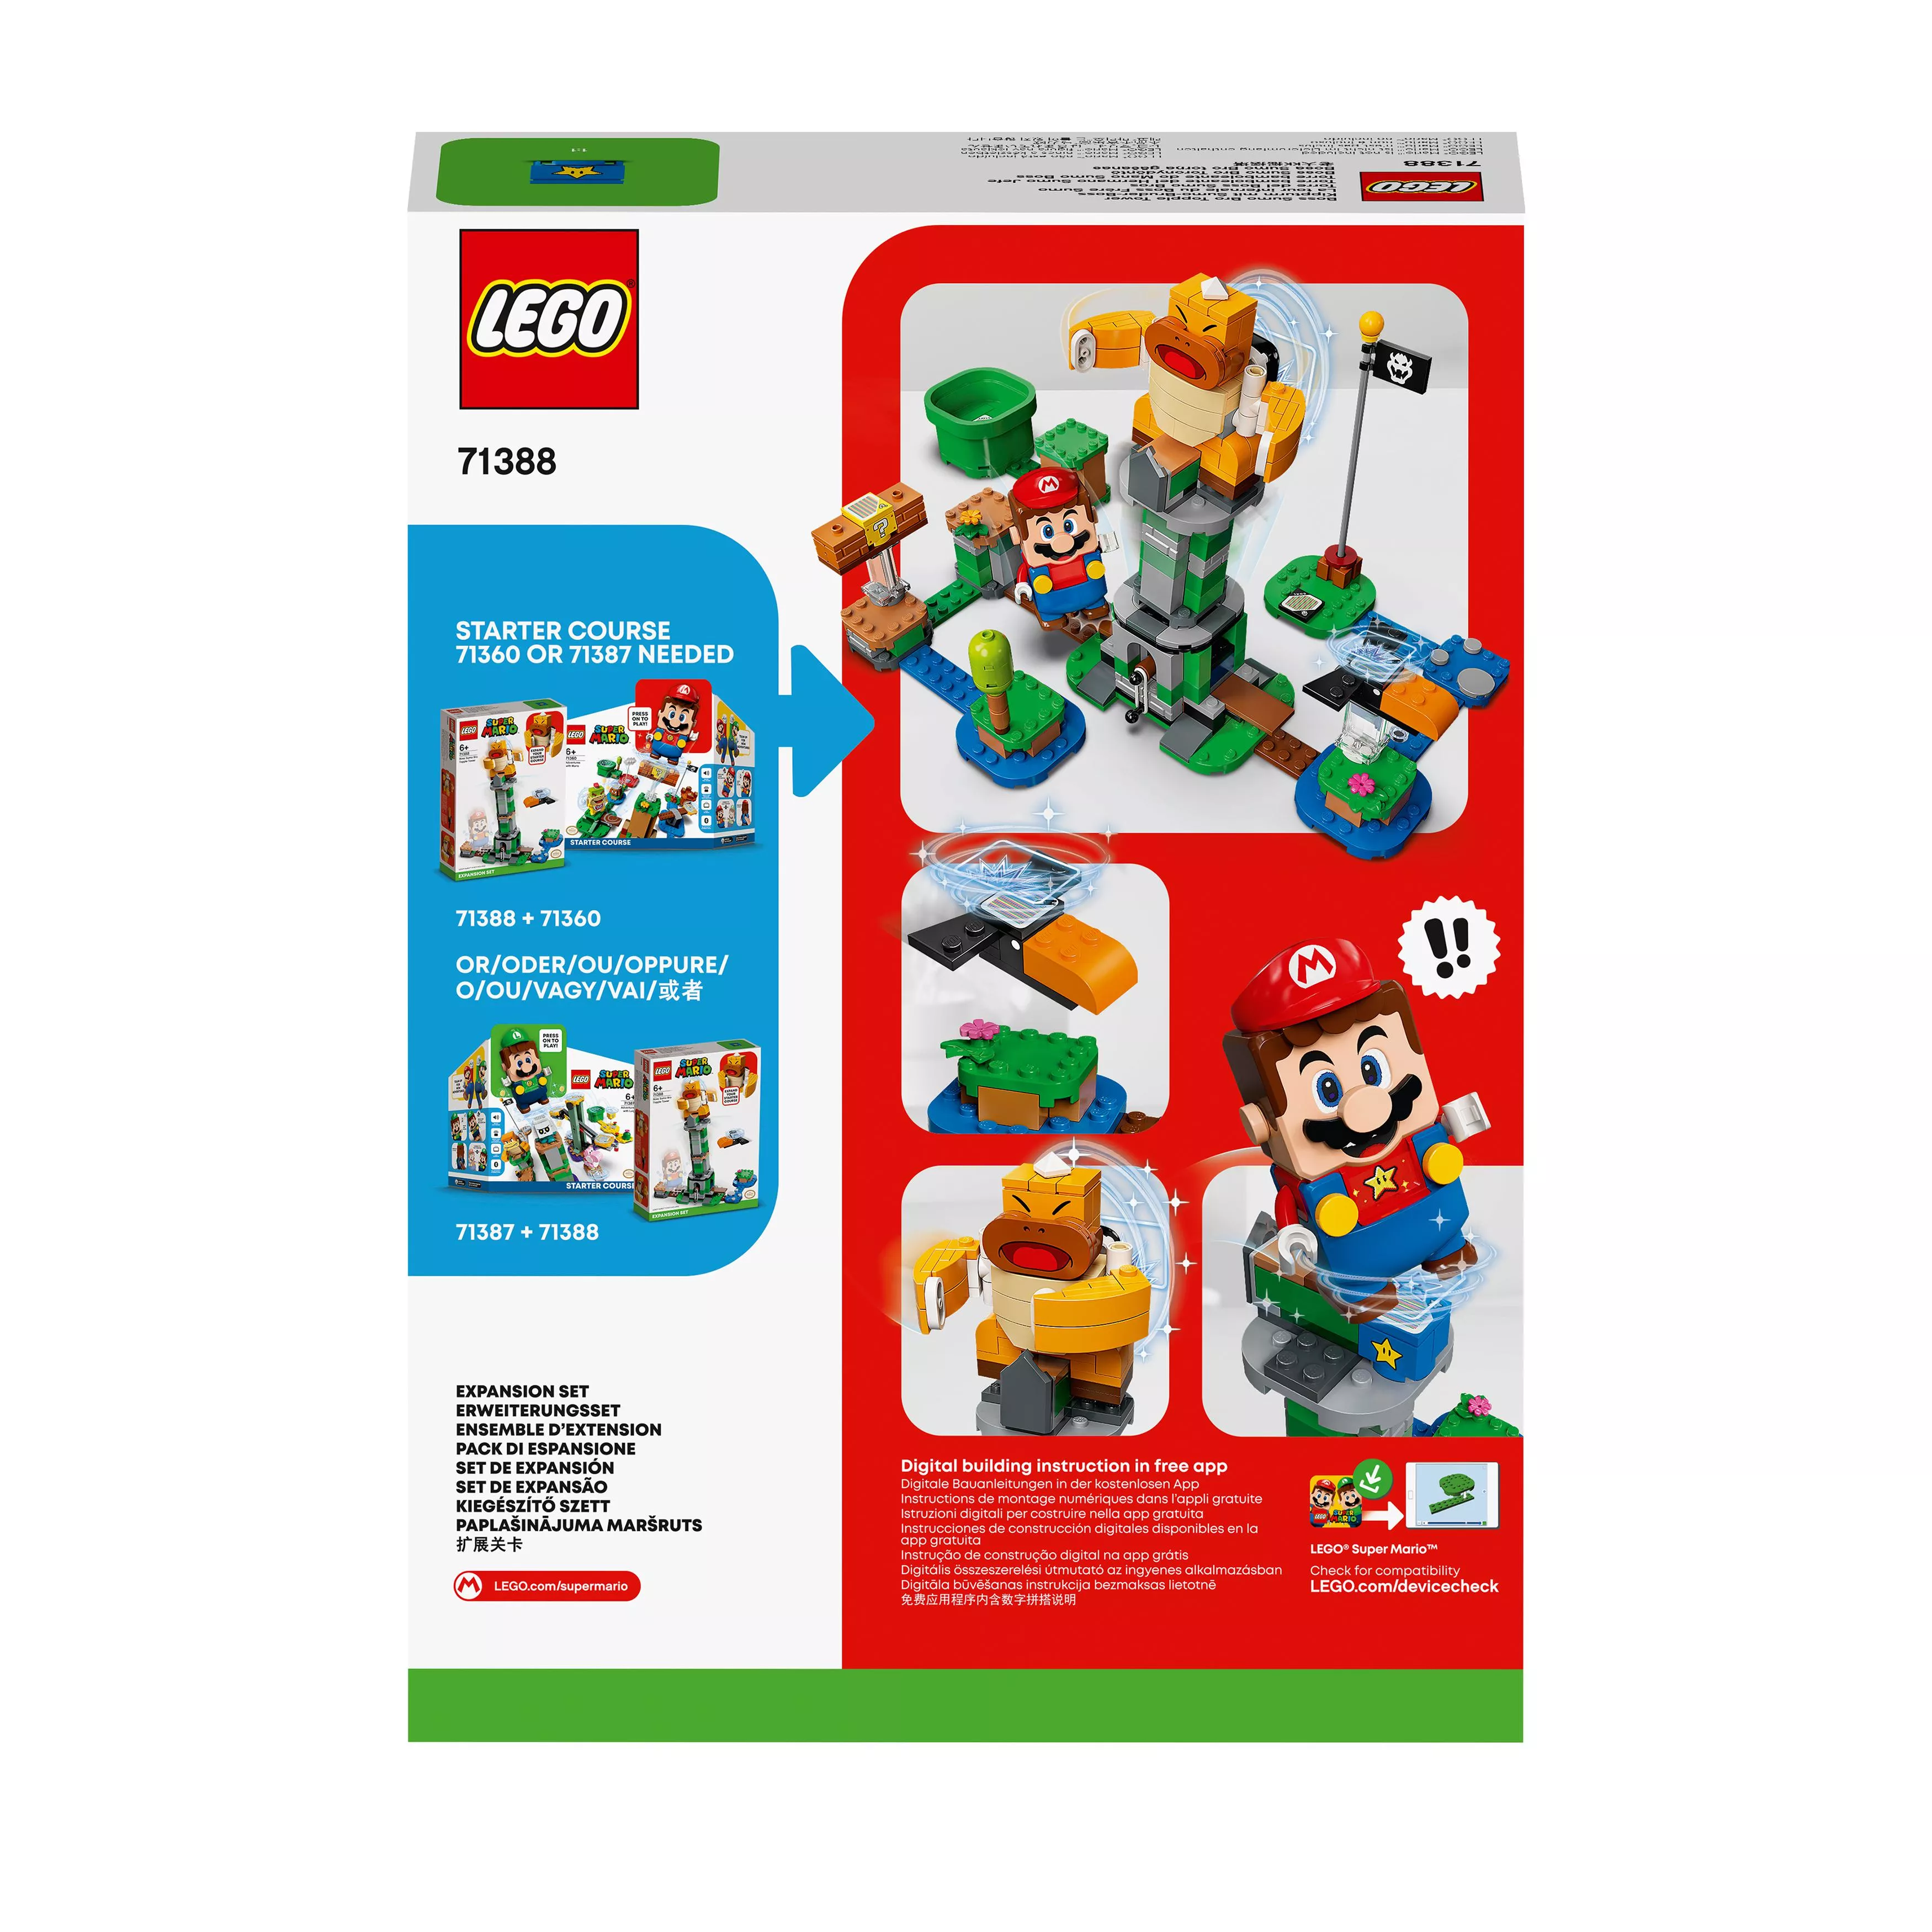 LEGO Super Mario Kippturm mit Sumo-Bruder-Boss – Erweiterungsset